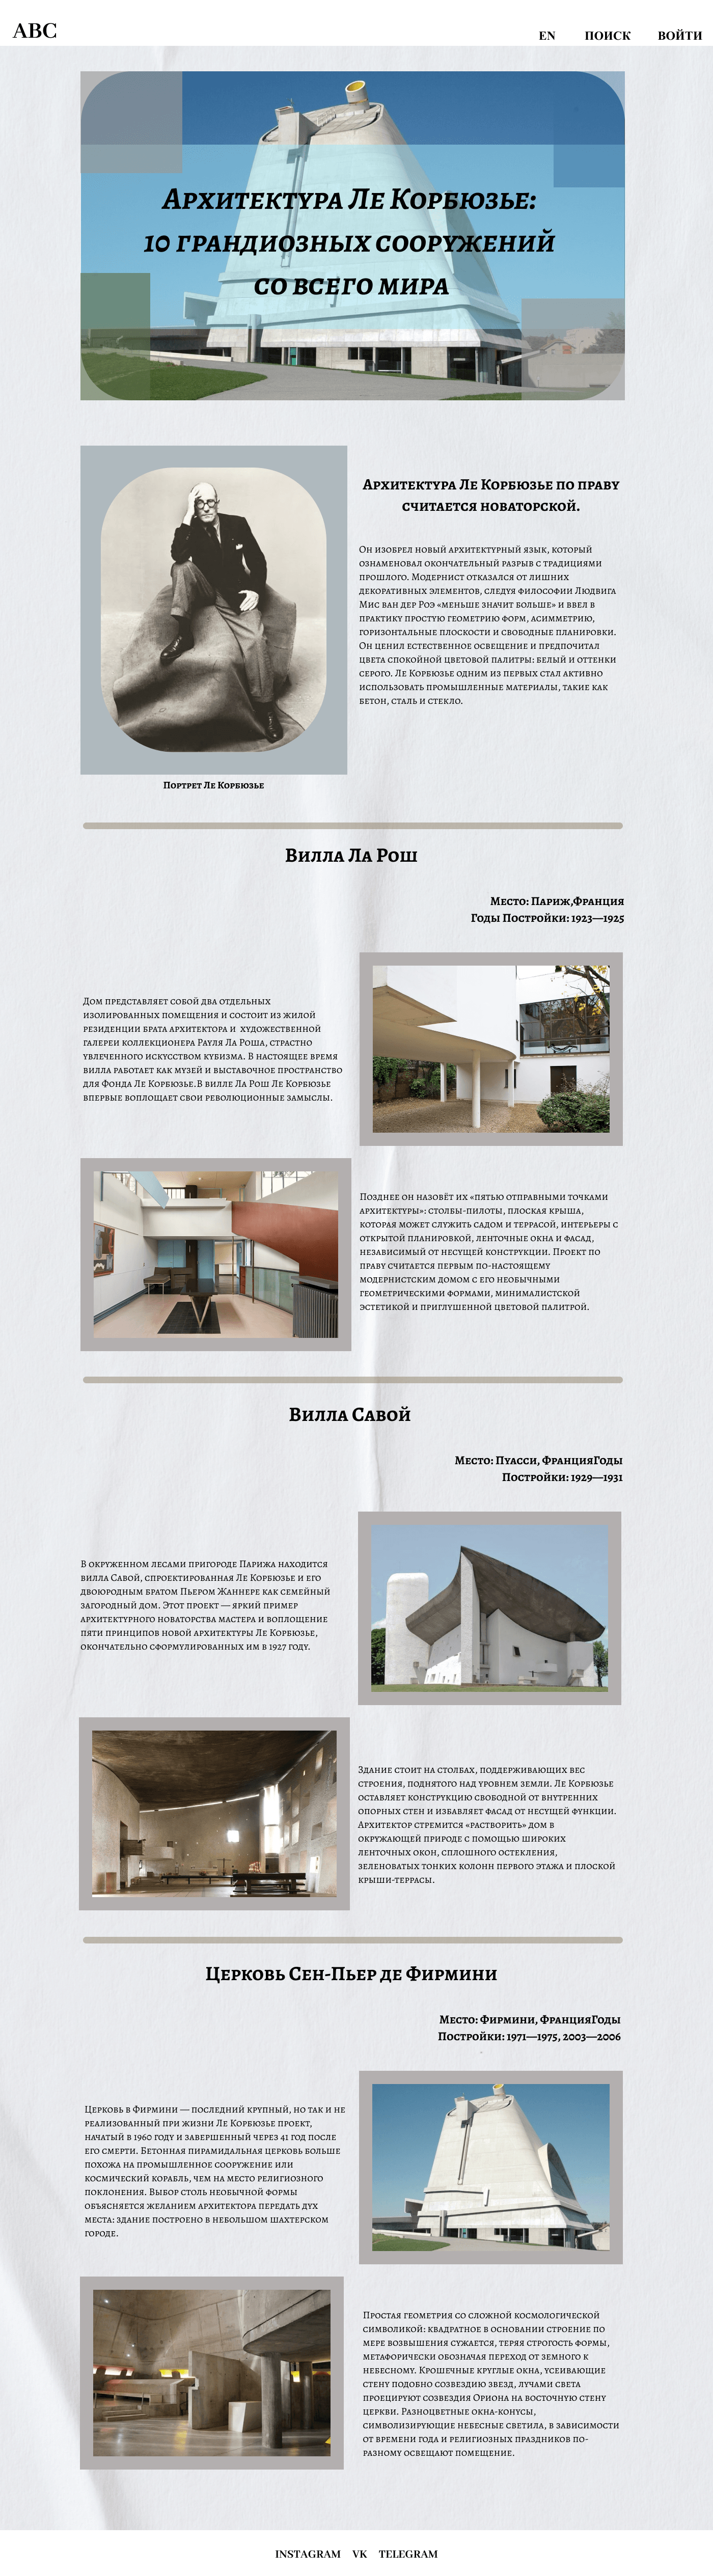 design Graphic Designer Advertising  designer post art Figma Website Web Design  architecture